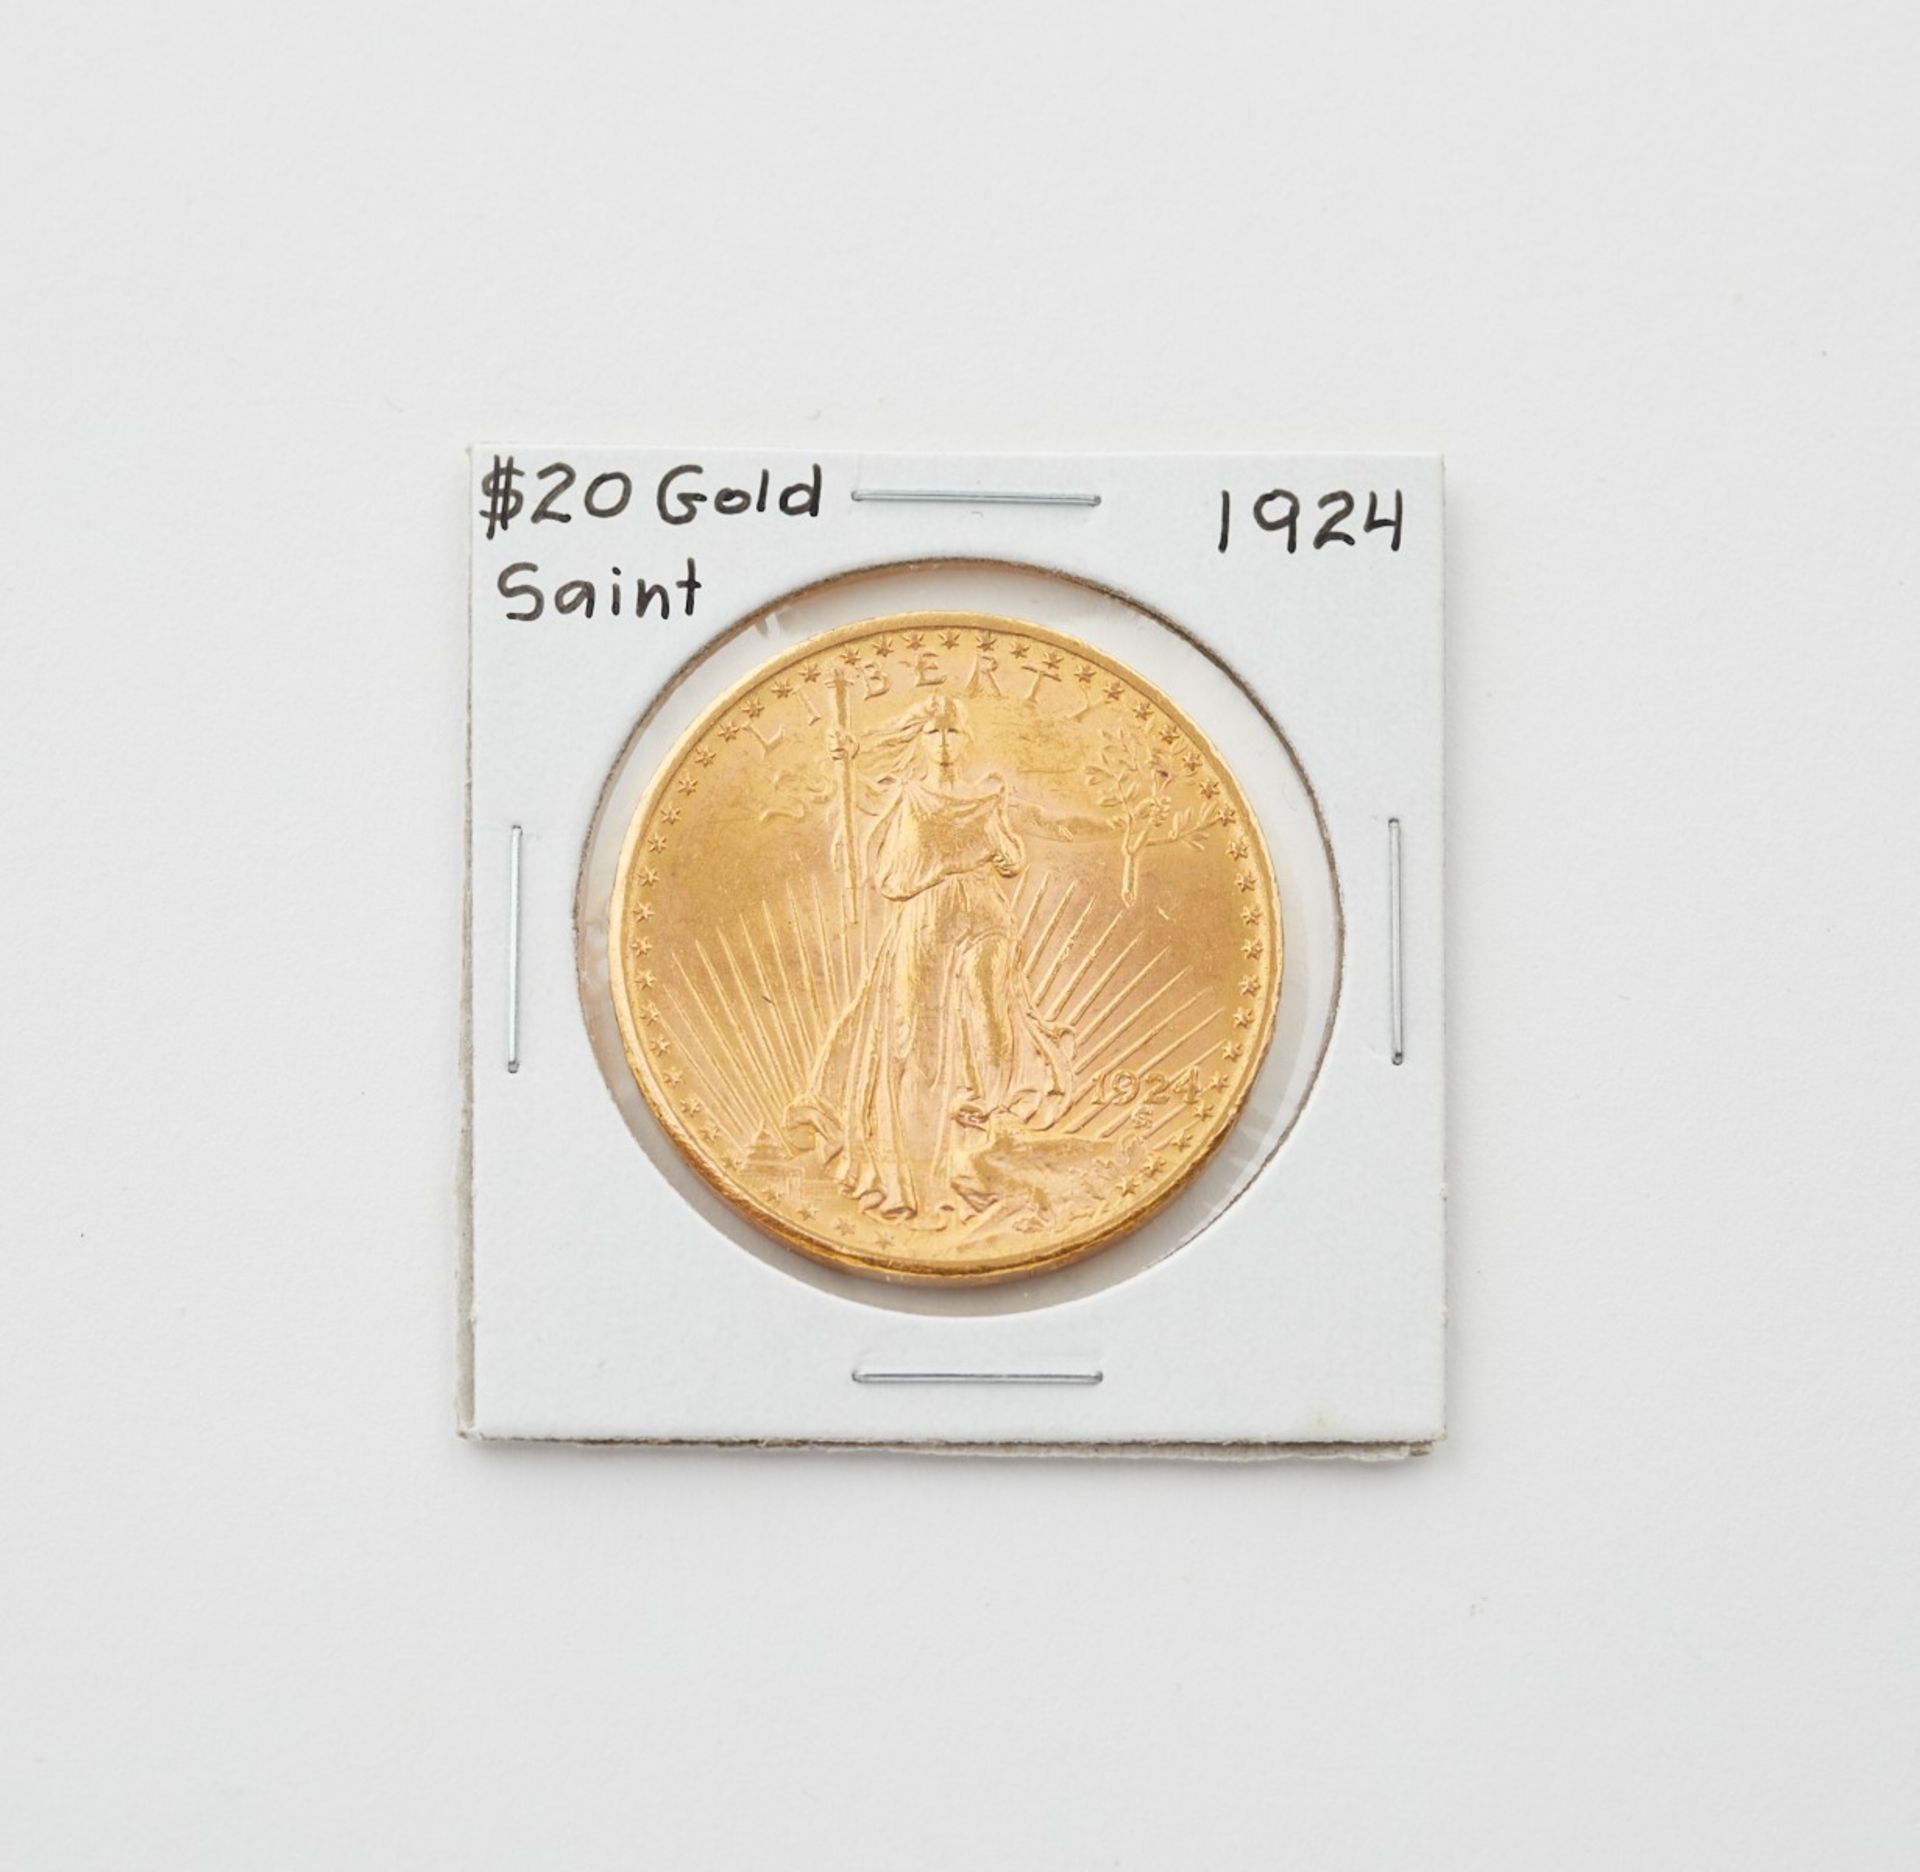 1924 $20 Gold Saint-Gaudens Coin